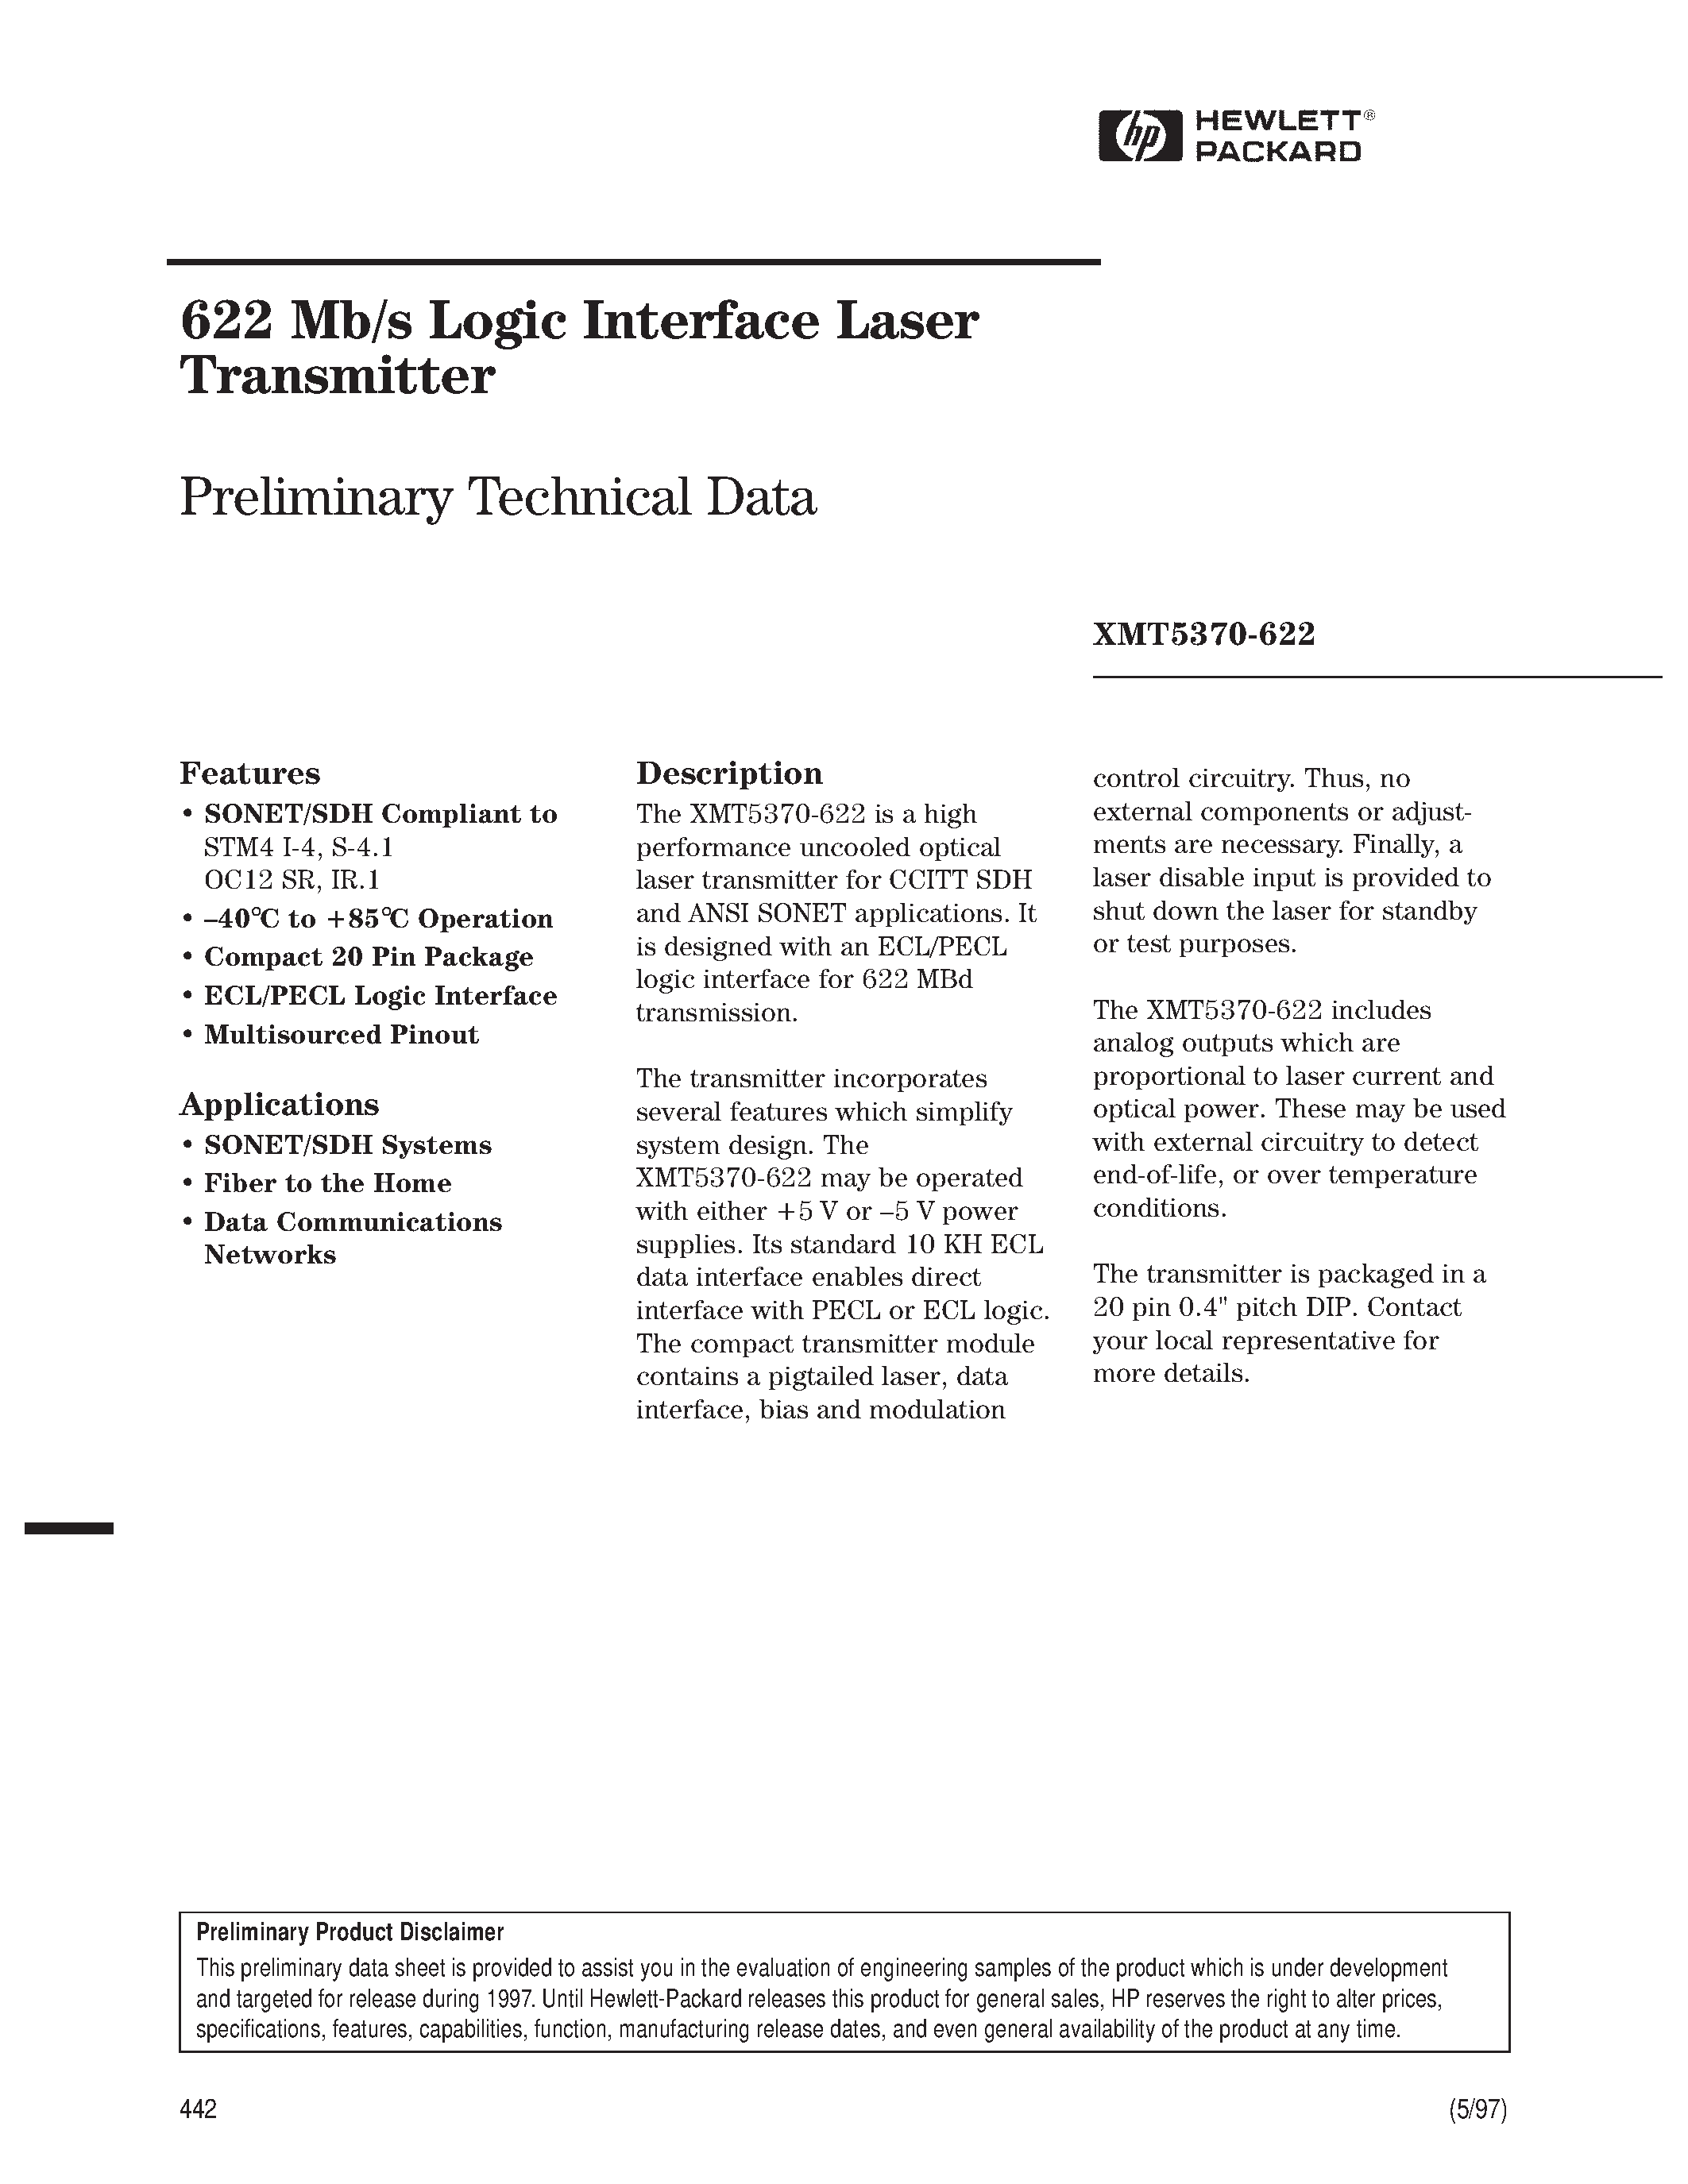 Datasheet XMT5360B-155-ST - 622 Mb/s Logic Interface Laser Transmitter page 1